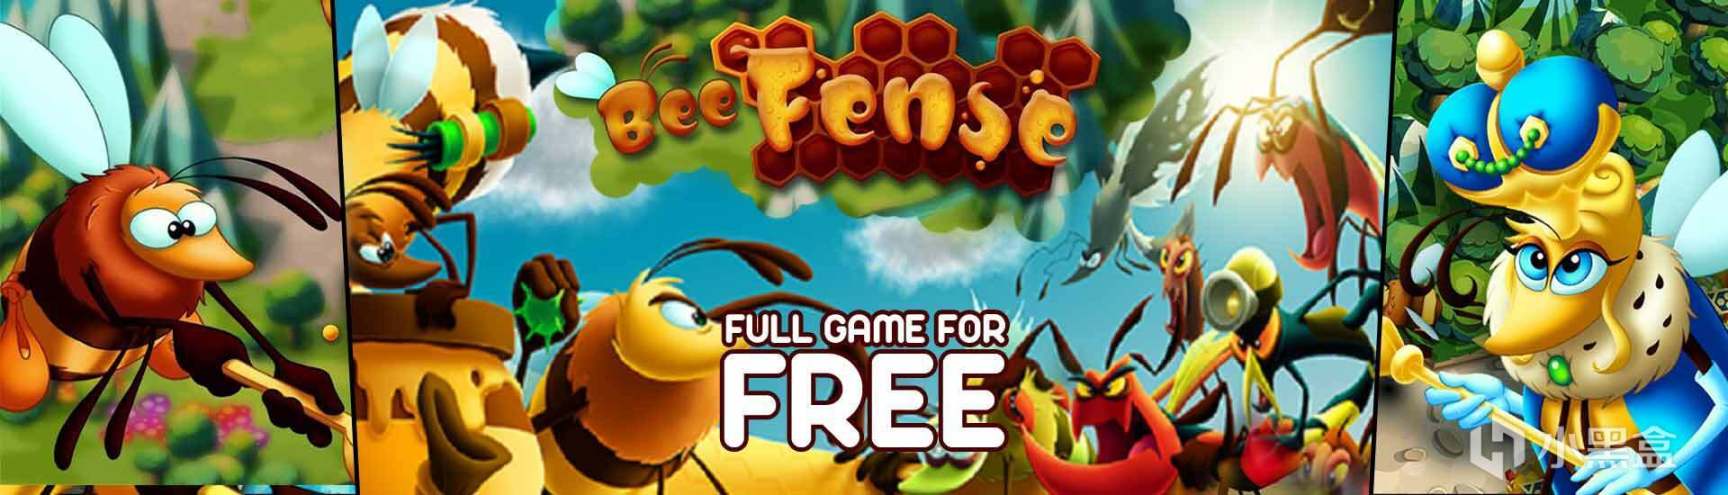 【PC游戏】IndieGala免费领取《蜂巢》《龙城之王》